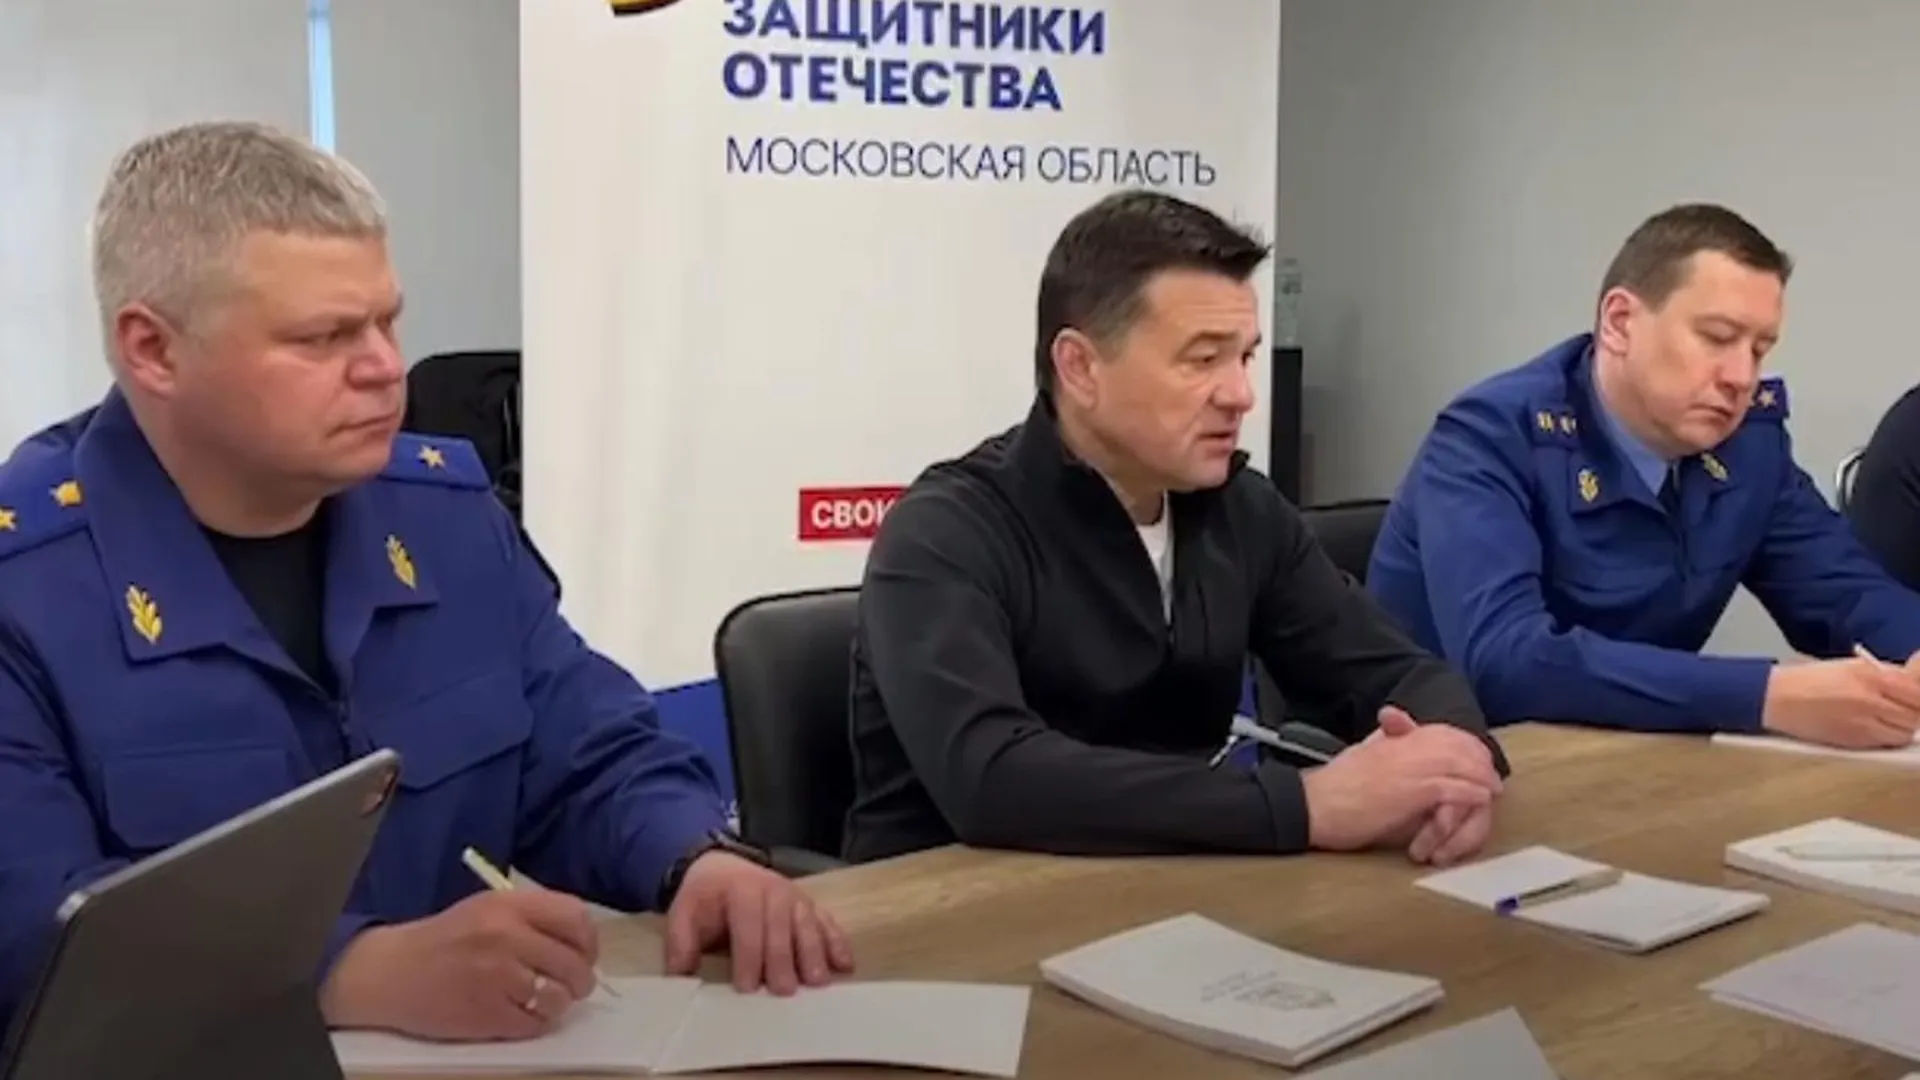 Андрей Воробьев: Провели еще один оперативный штаб на месте теракта при участии коллег из Москвы